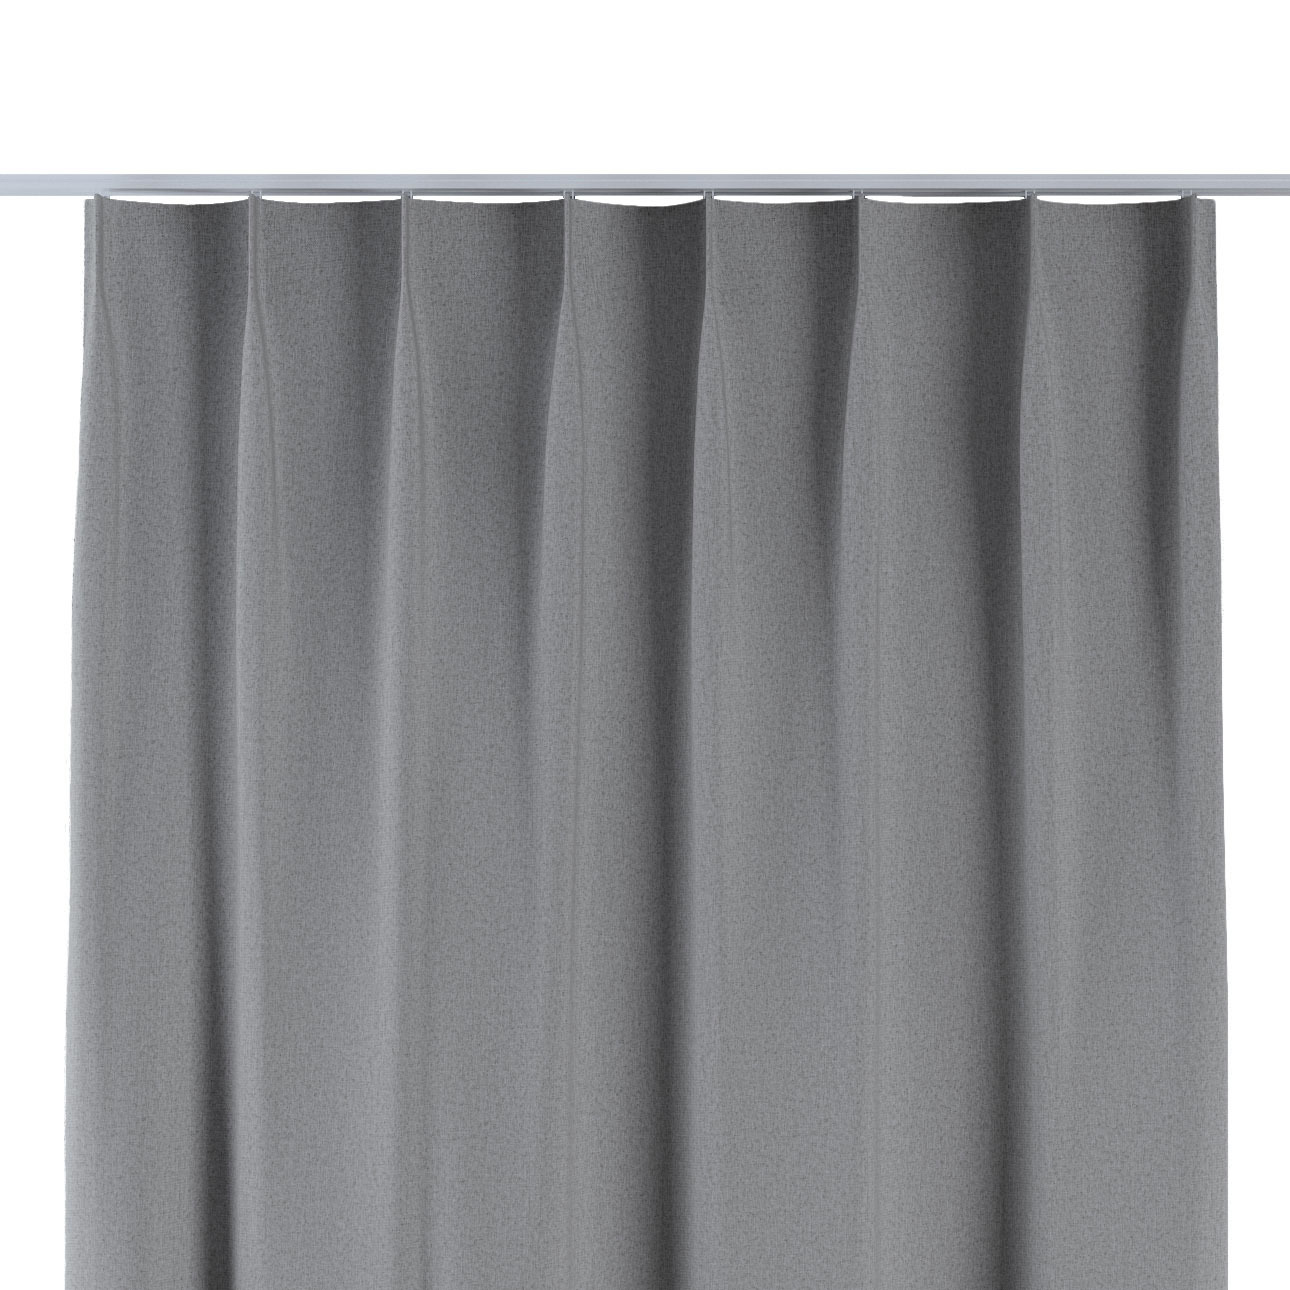 Vorhang mit flämischen 1-er Falten, grau, Blackout Soft (269-22) günstig online kaufen